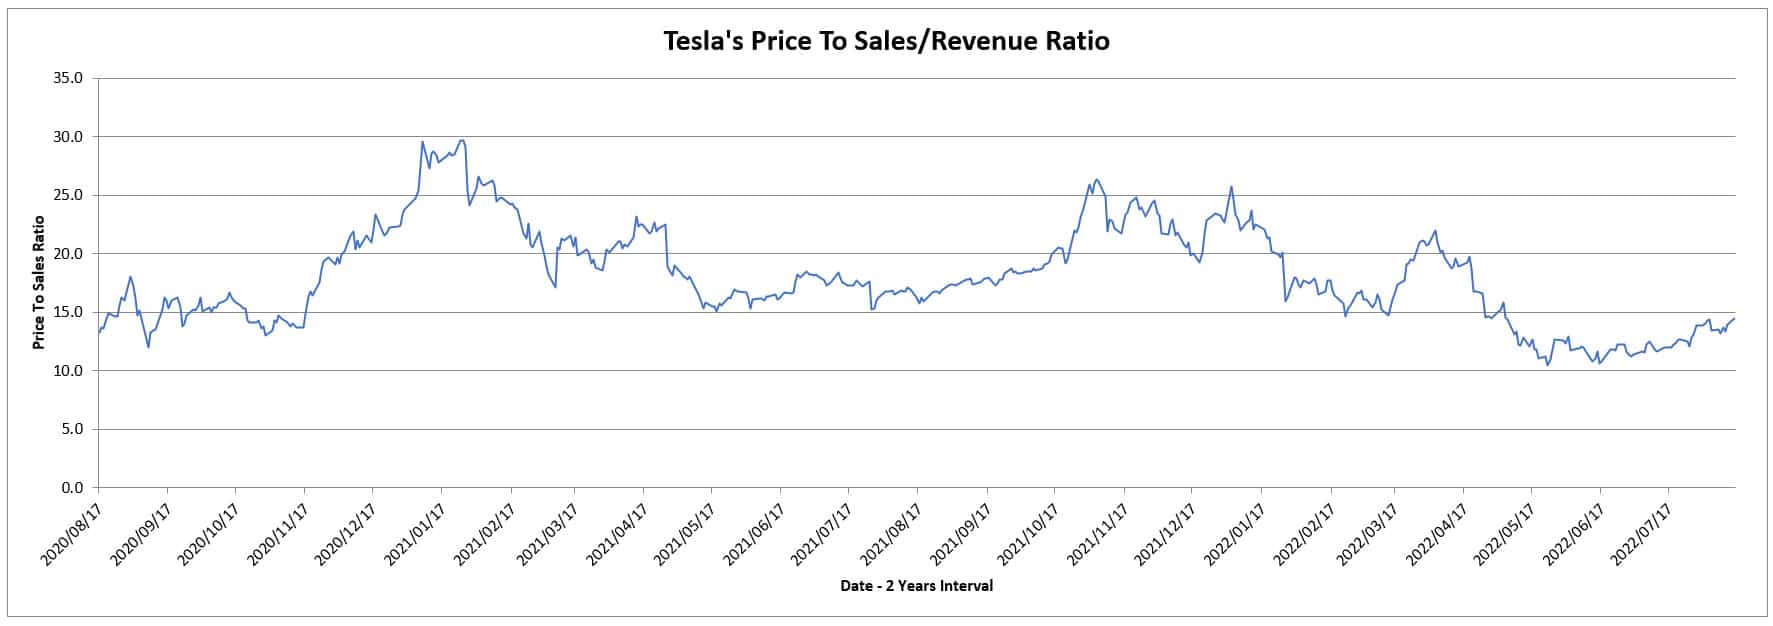 Tesla's price to sales/revenue ratio